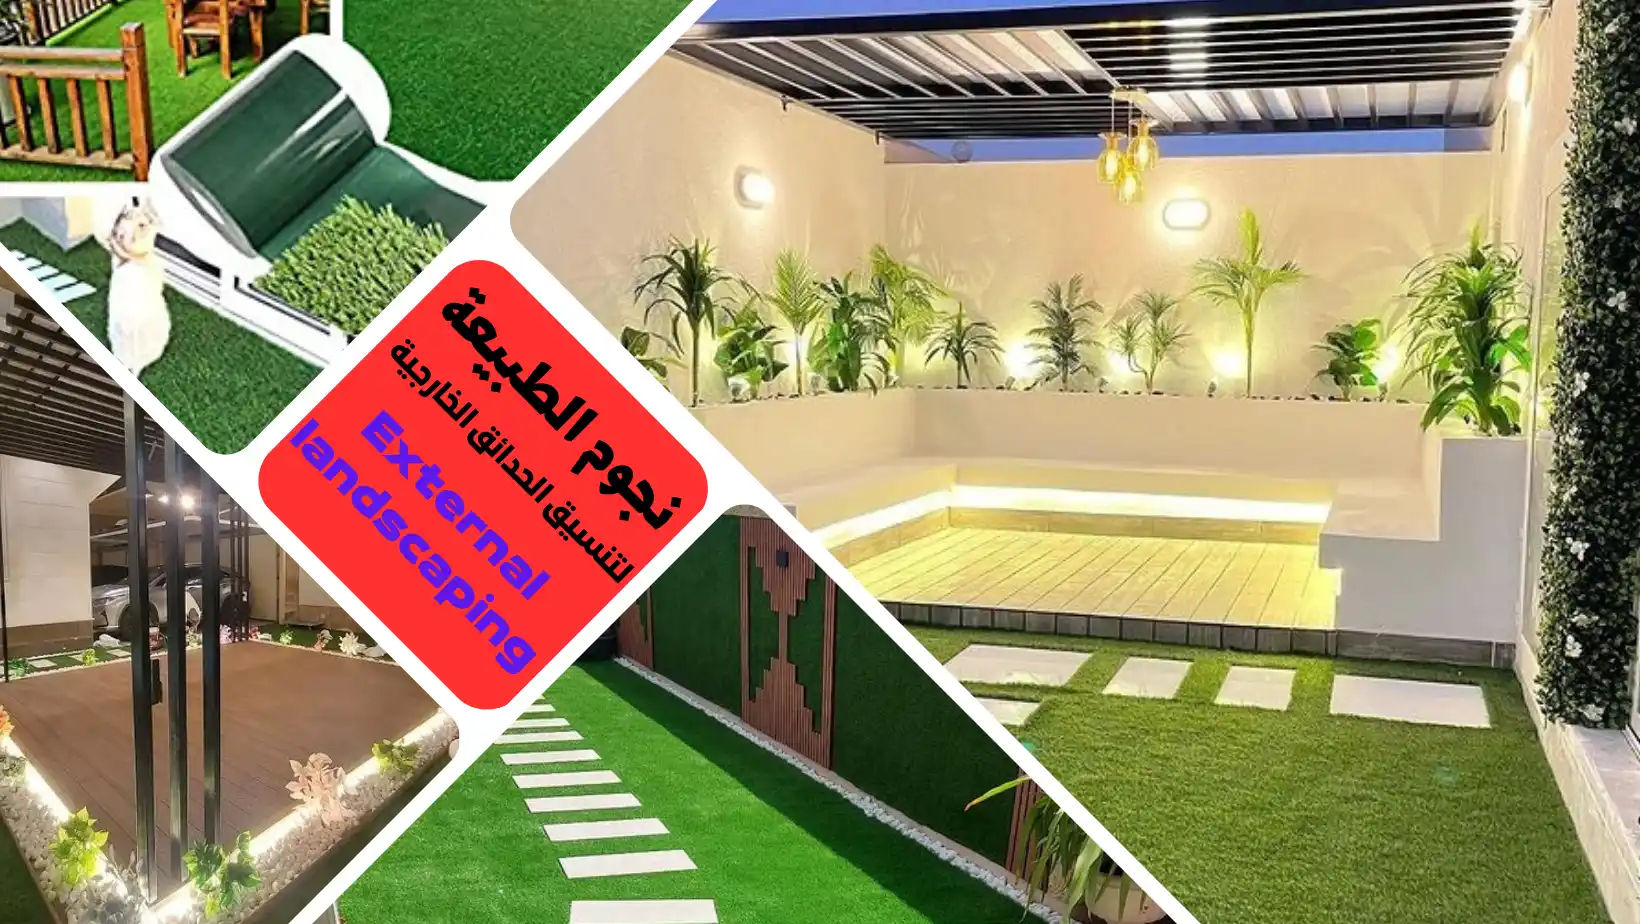 تصاميم حدائق خارجية رائعة لتحويل منزلك إلى عالم أخضر في الرياض تنسيق وتصميم حدائق منزلية من الخبراء